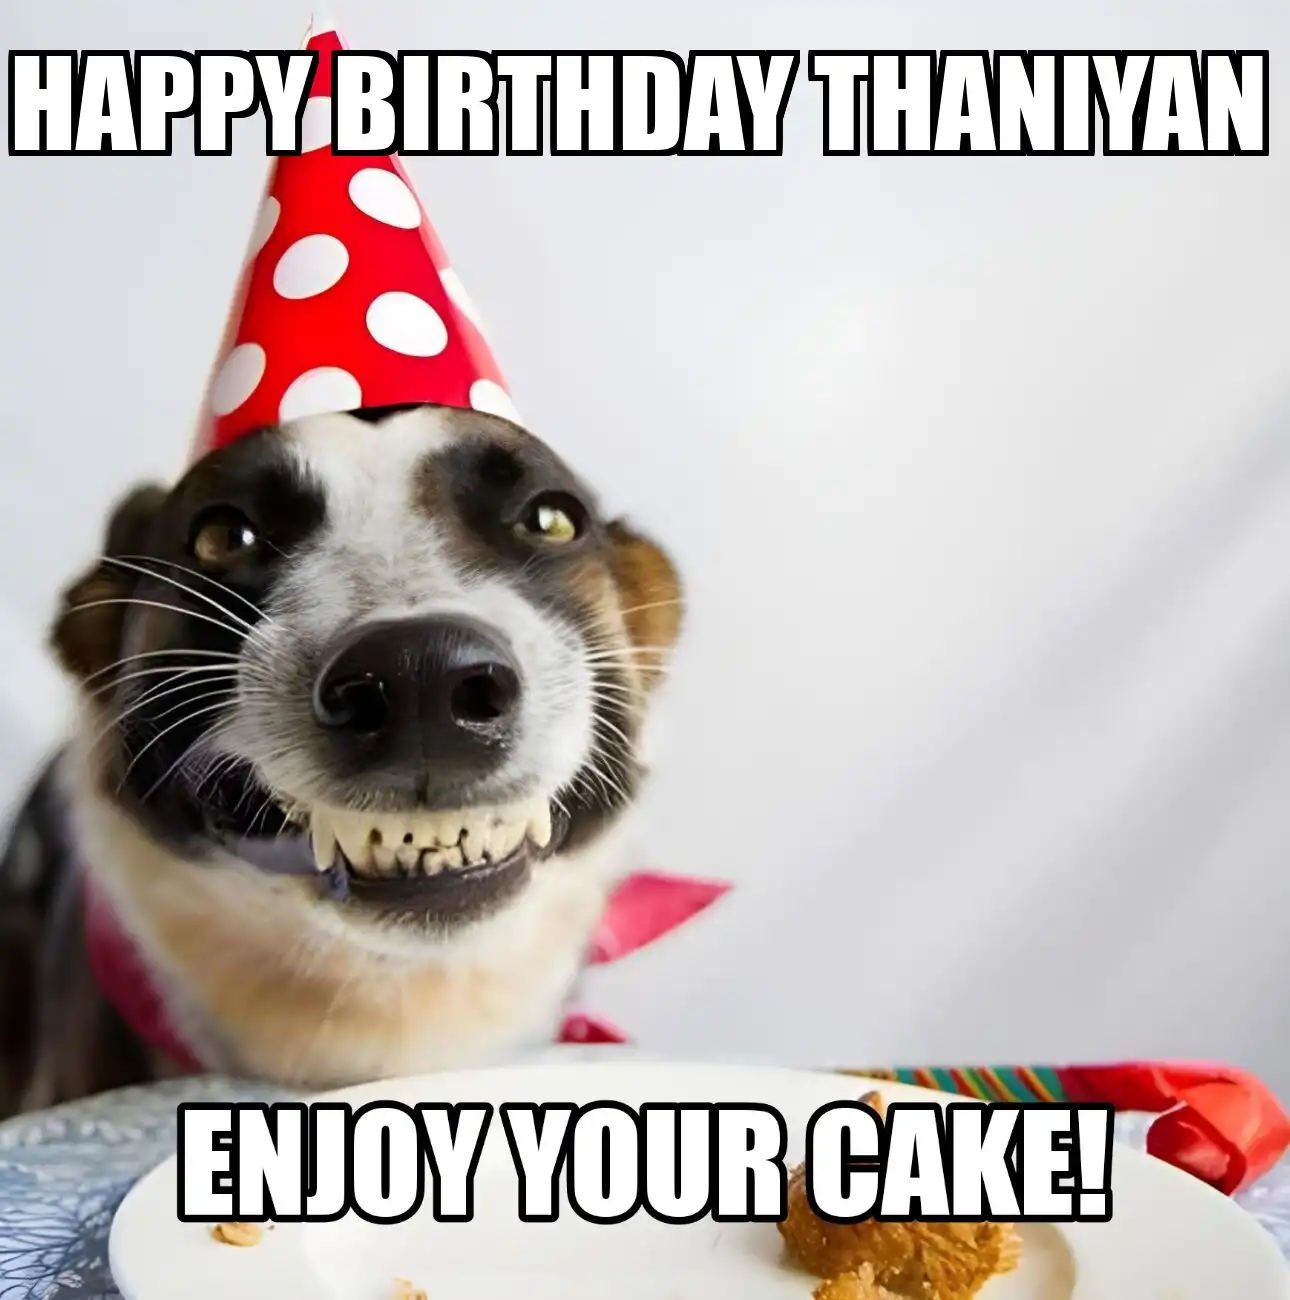 Happy Birthday Thaniyan Enjoy Your Cake Dog Meme